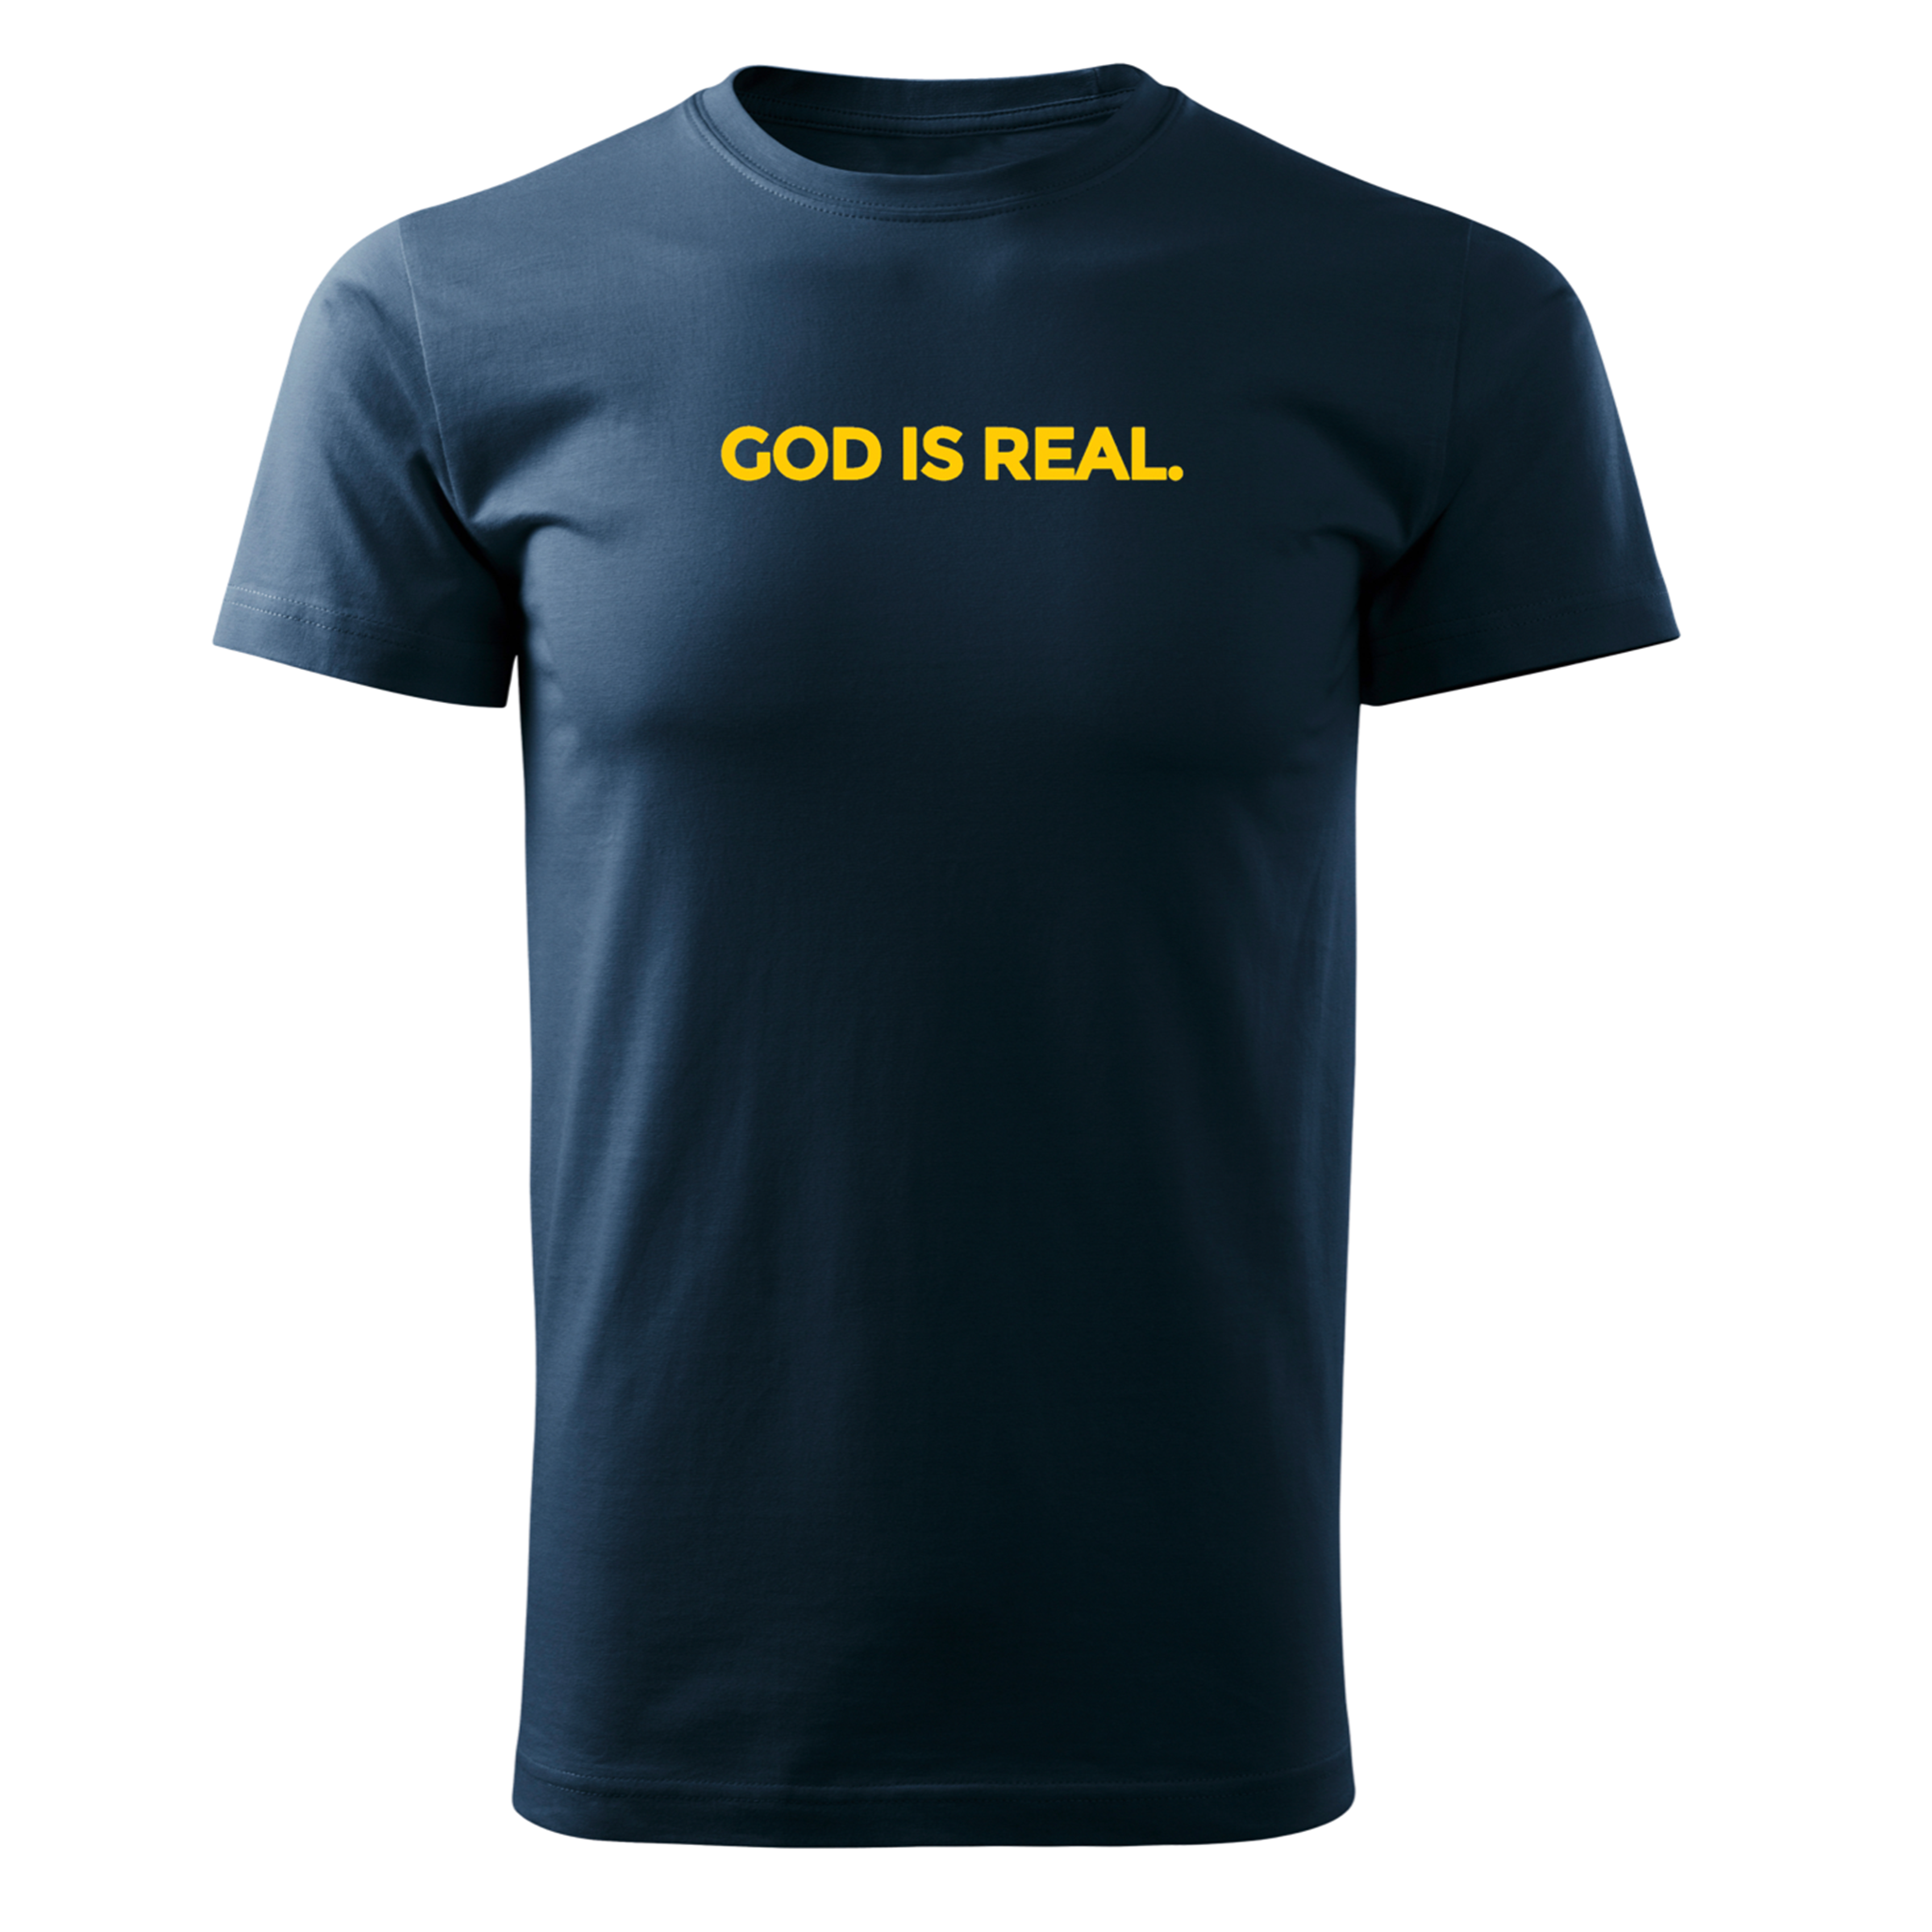 TJ53 God Is Real Printed Tee - Men's